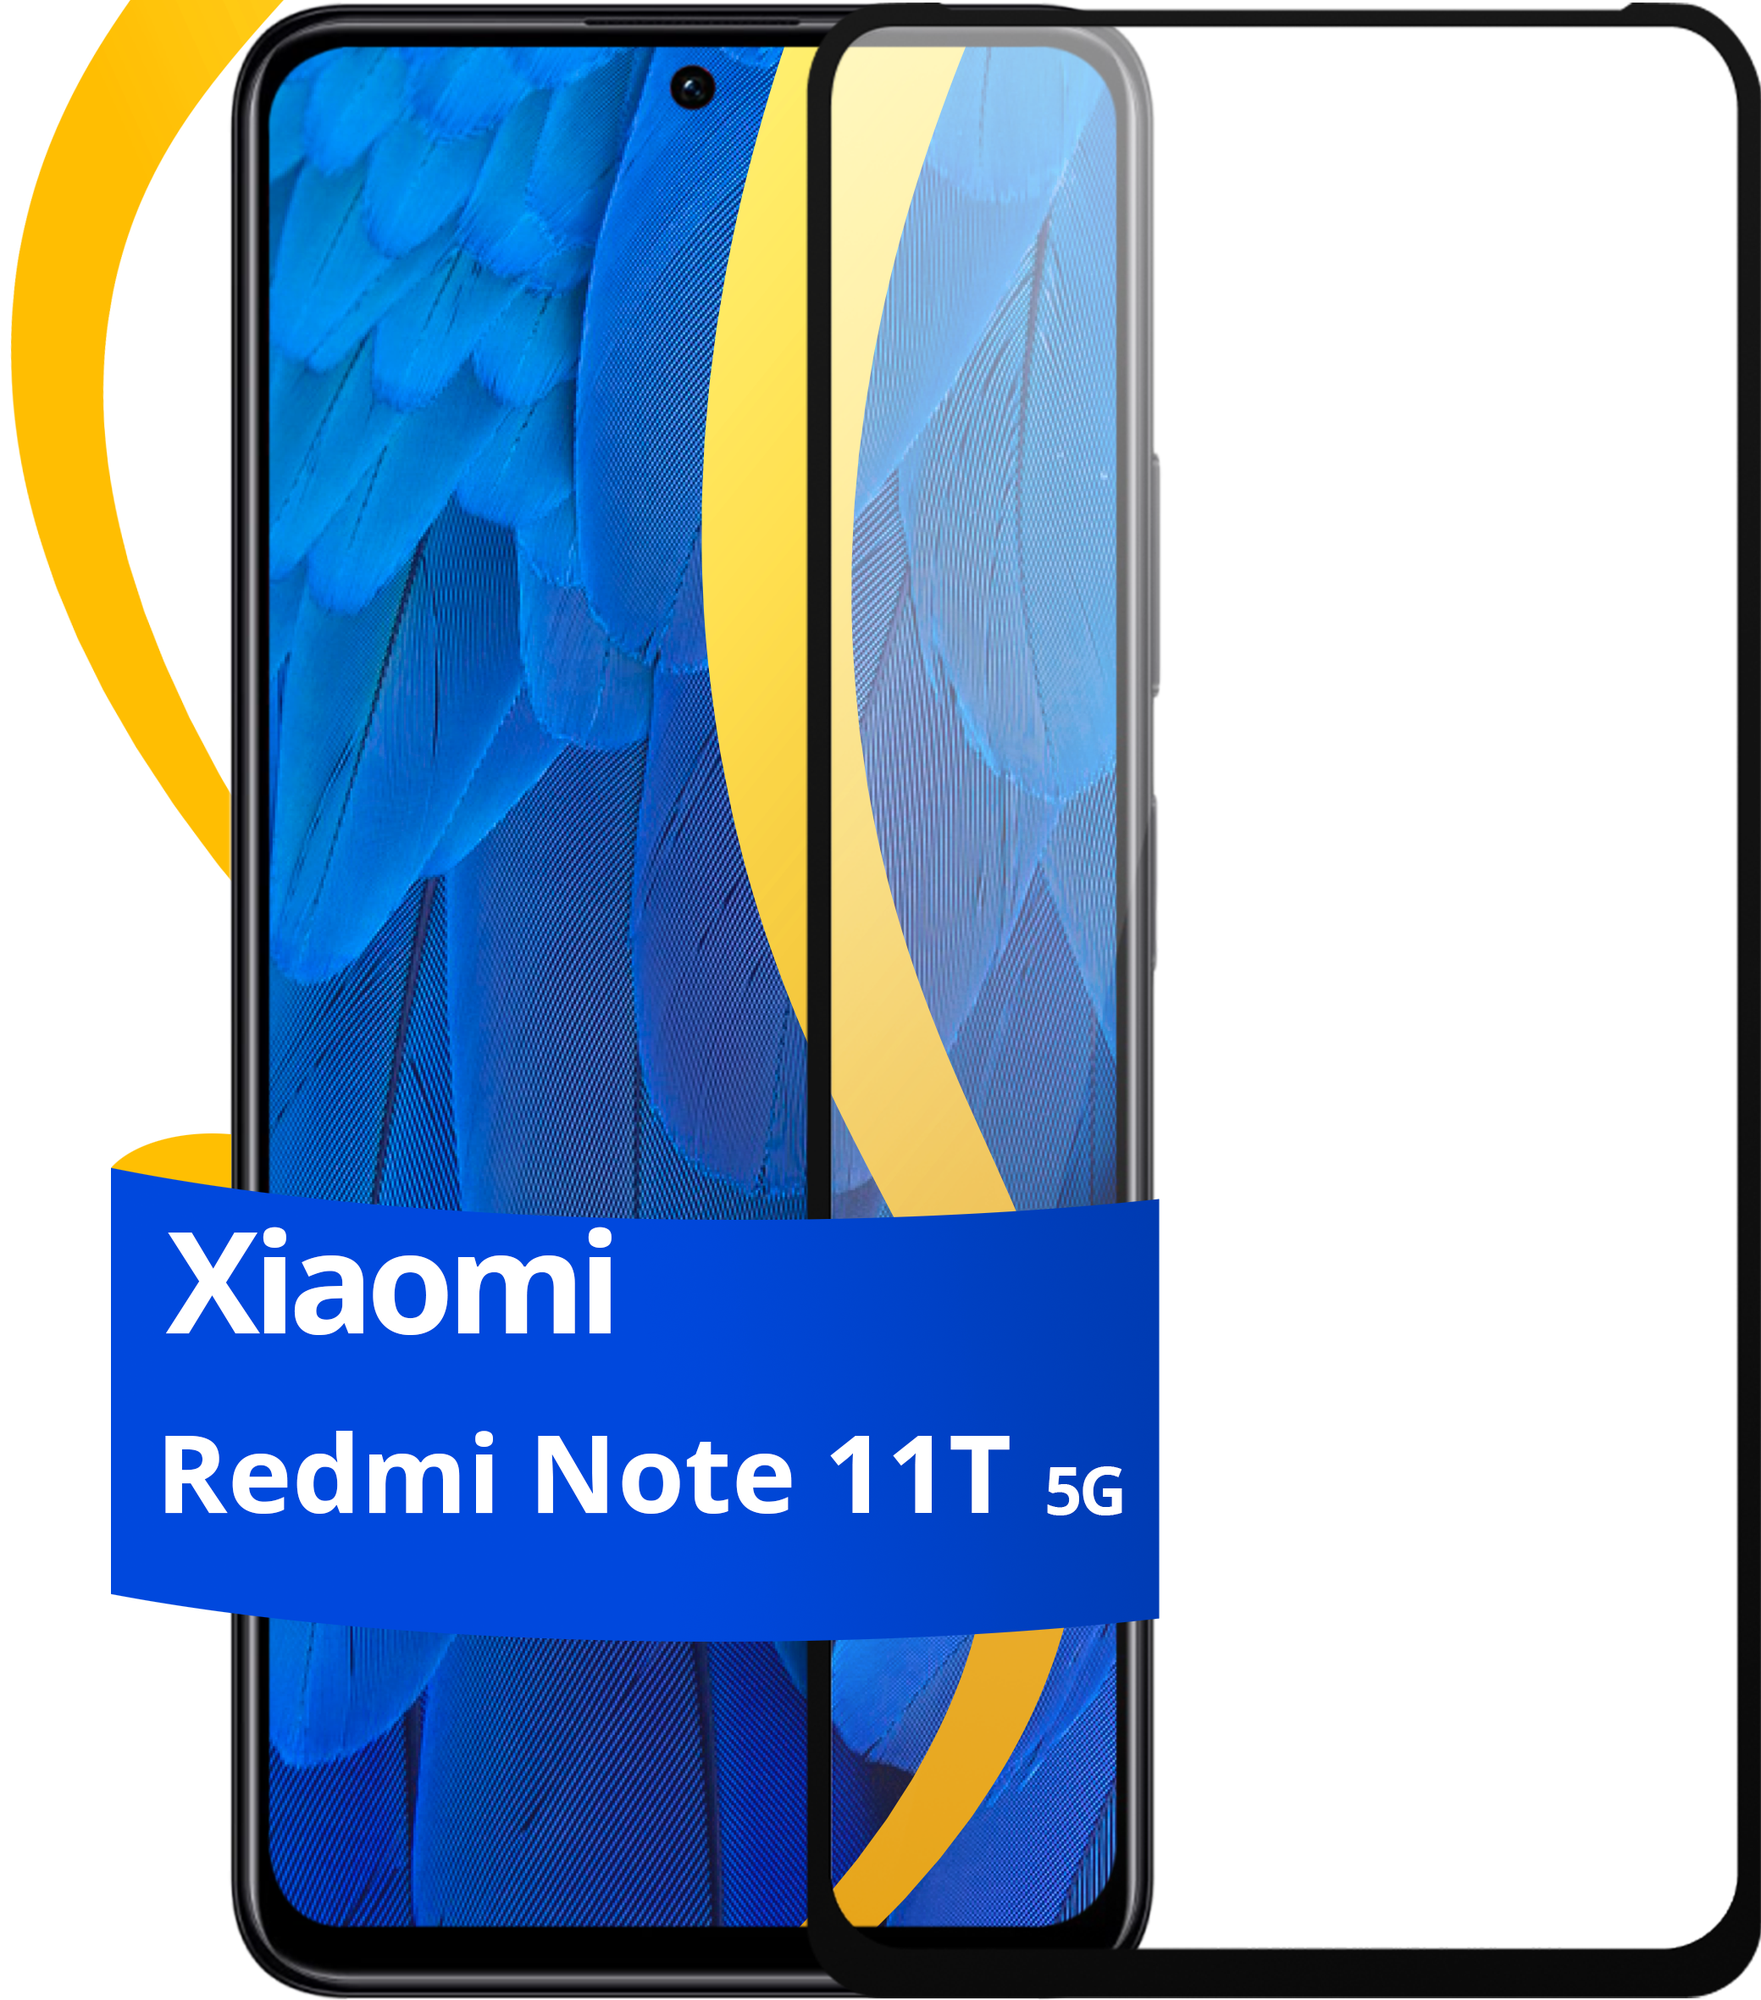 Глянцевое защитное стекло для телефона Xiaomi Redmi Note 11T 5G / Противоударное стекло с олеофобным покрытием на смартфон Сяоми Редми Нот 11Т 5Г